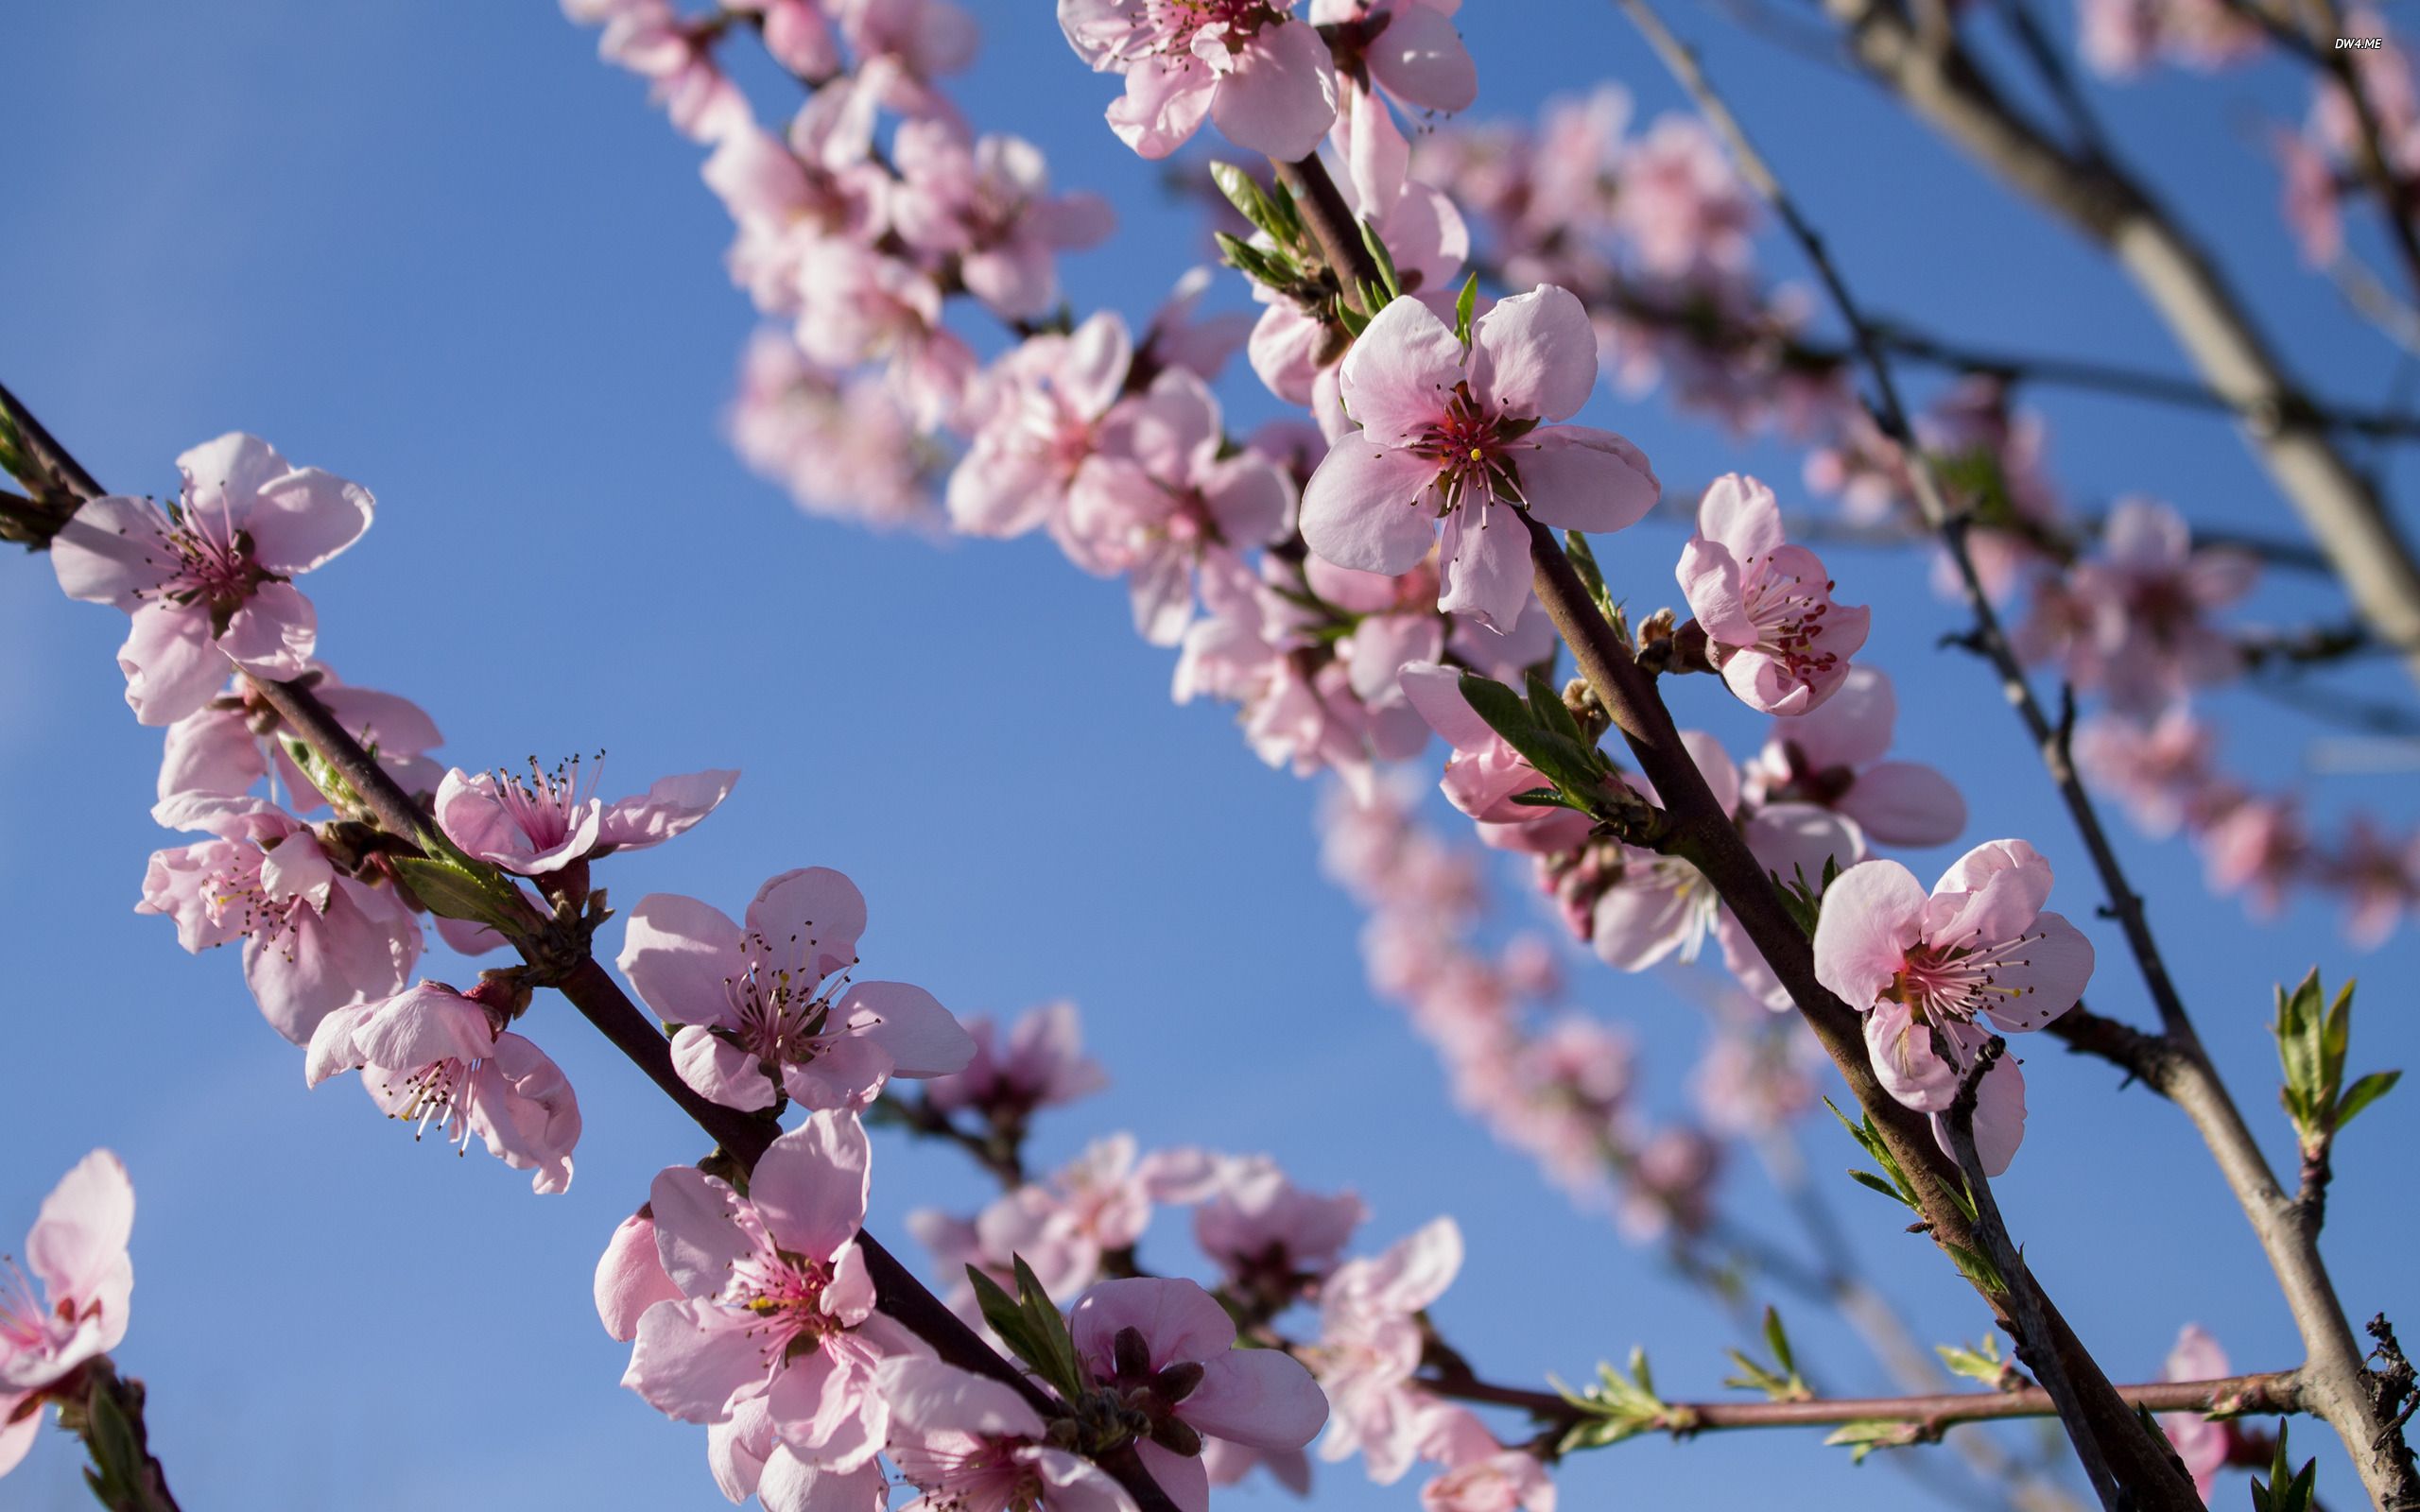 عکس استوک و بسیار زیبا از شکوفه های قشنگ با کیفیت بالا